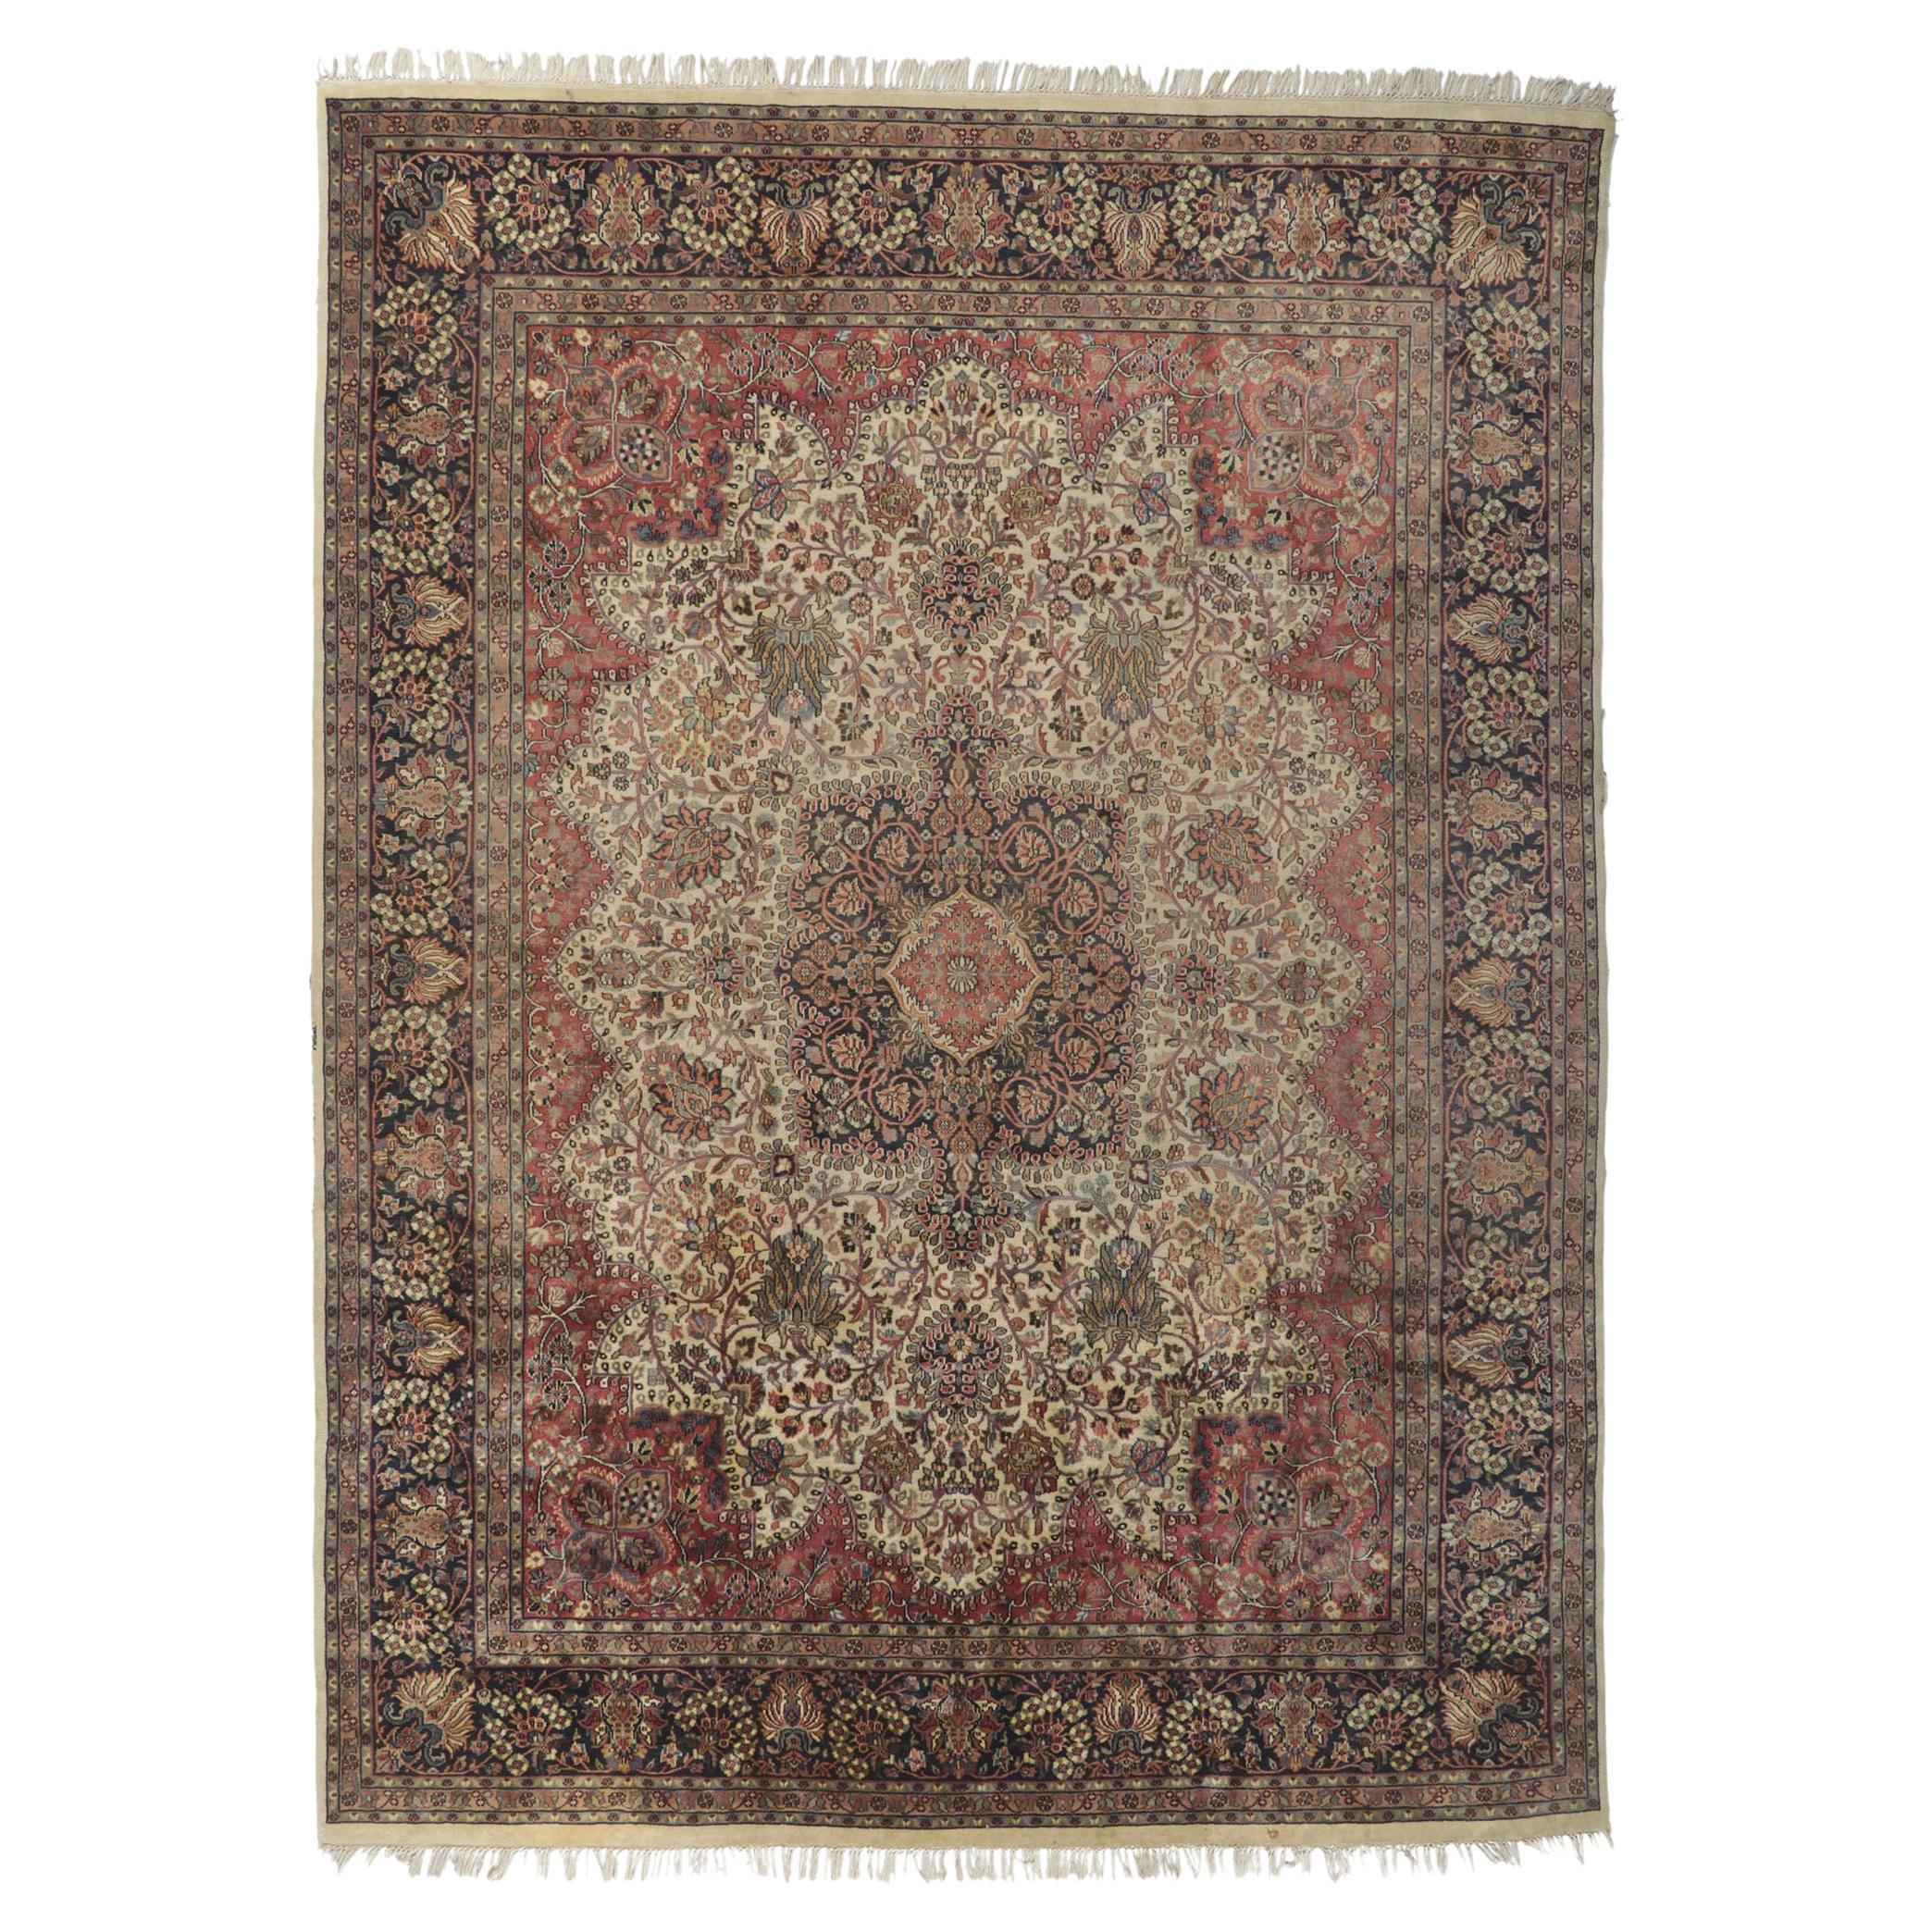 Indischer Teppich im viktorianischen Stil, Vintage